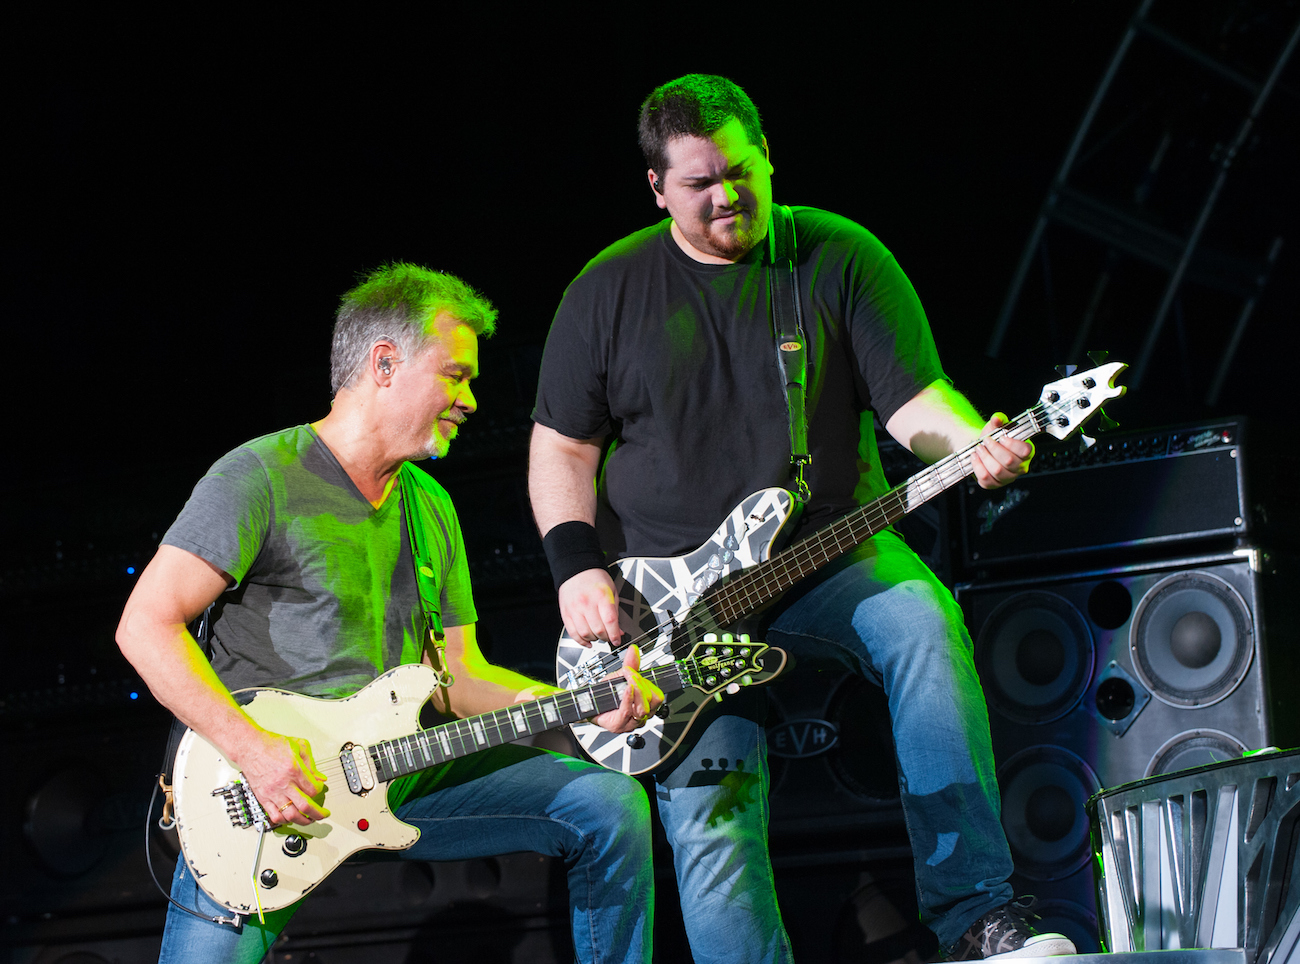 Eddie Van Halen and his son, Wolfgang Van Halen performing with Van Halen in 2015.